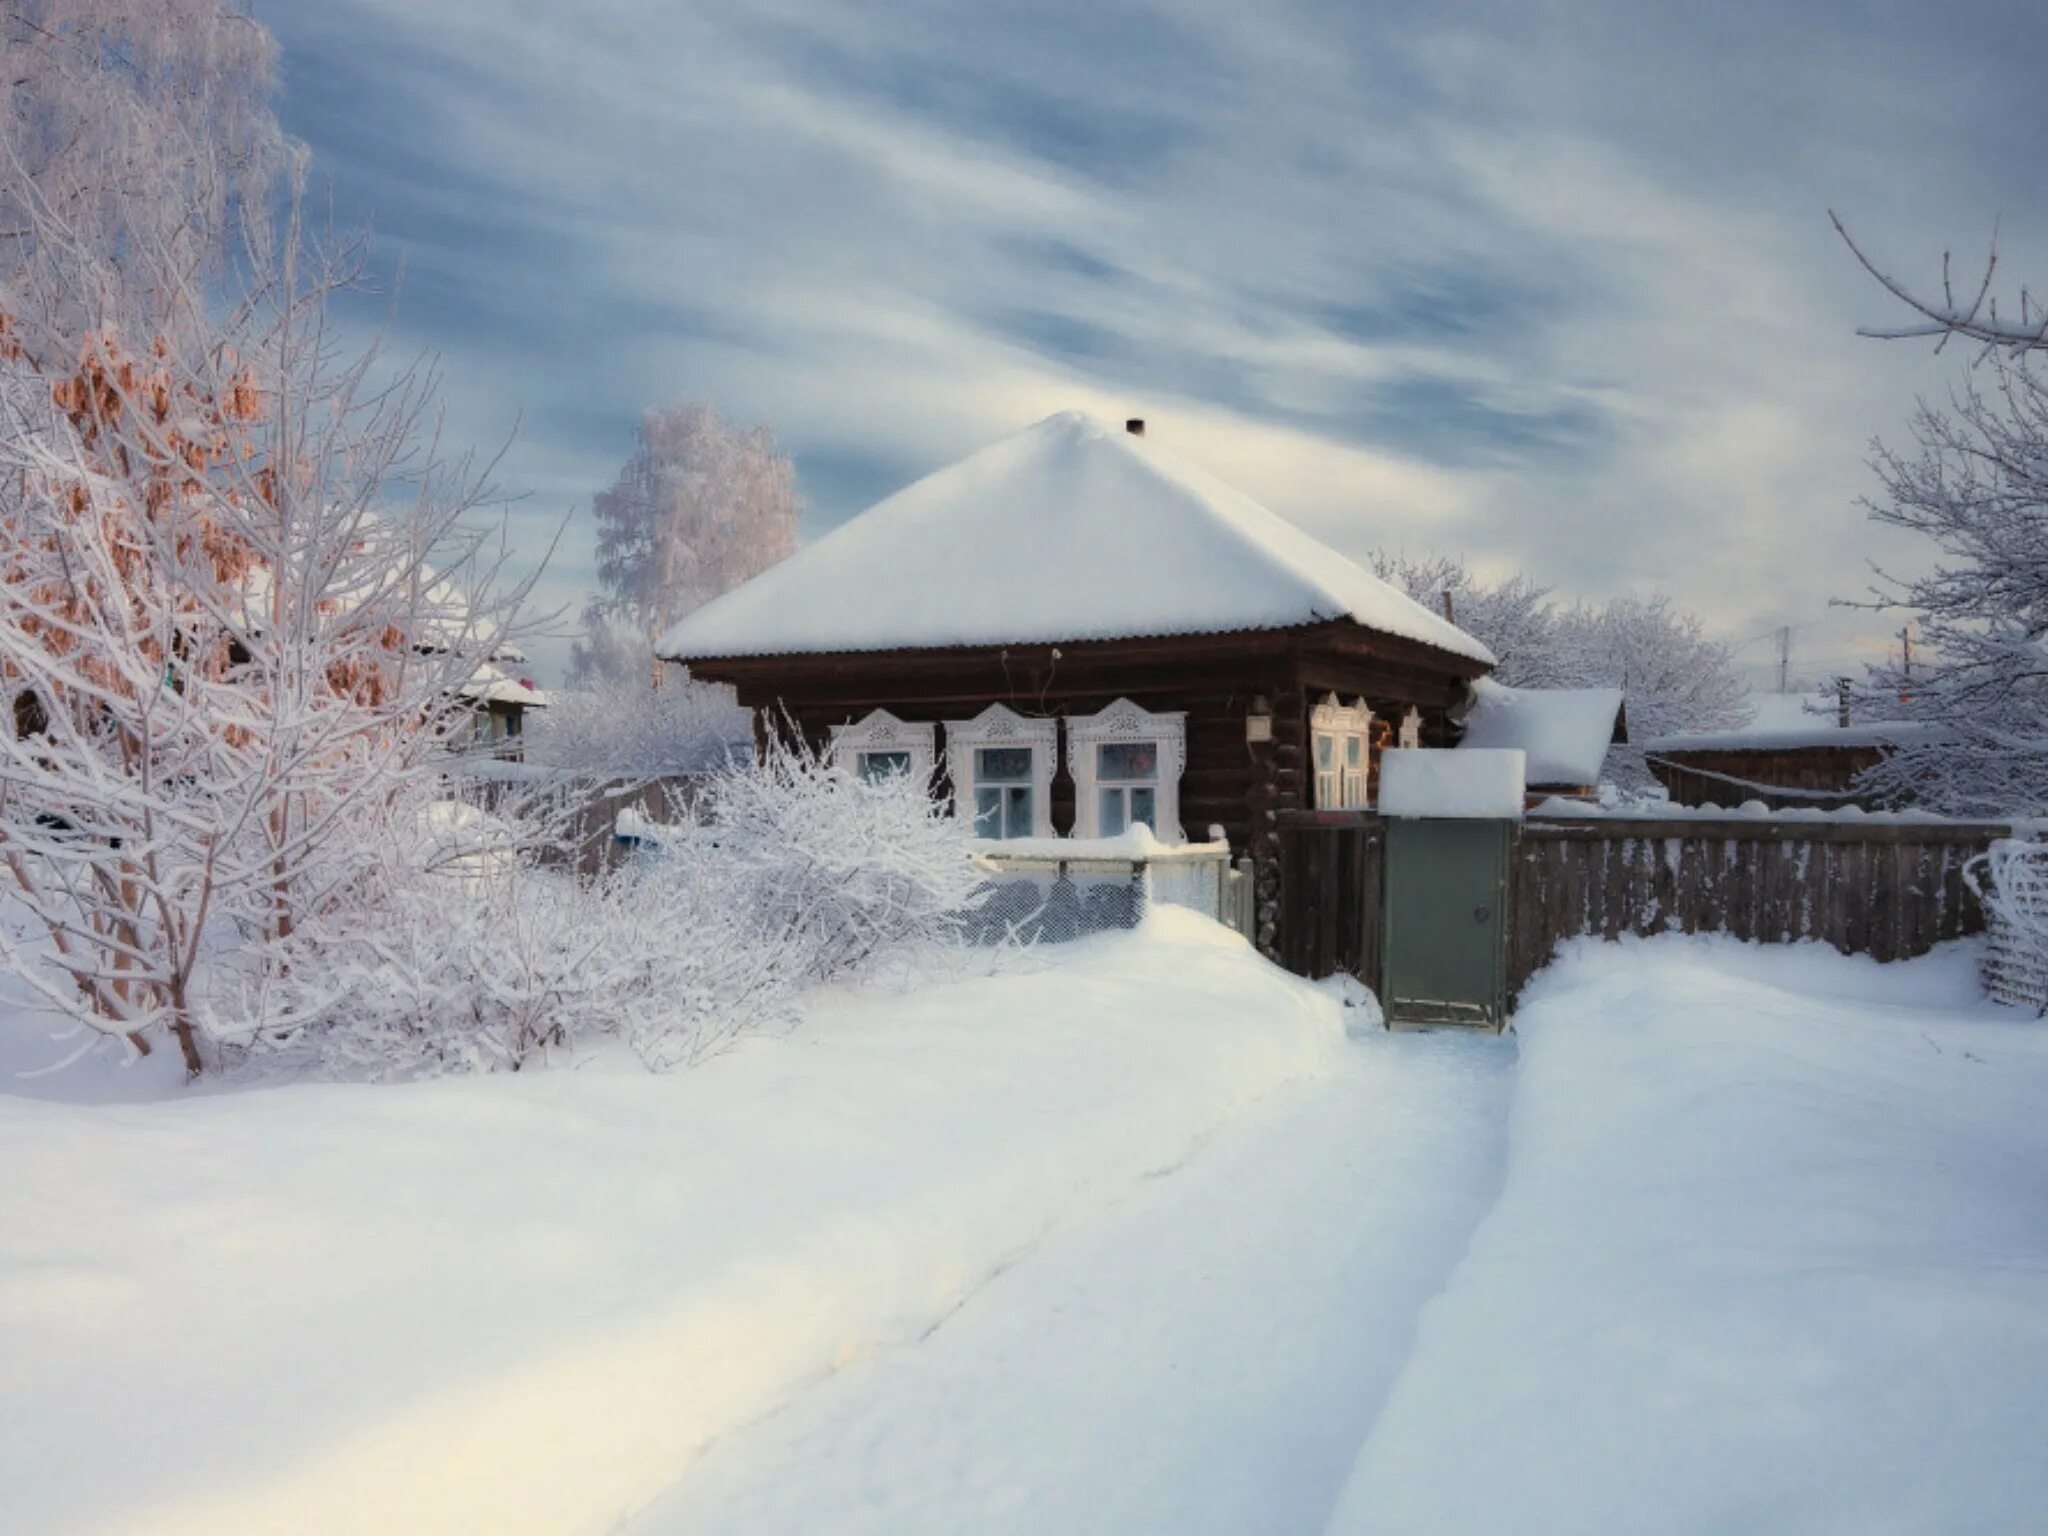 Зима в деревне. Зимняя деревня. Заснеженный двор в деревне. Деревенский домик в снегу. Сяду в сугроб